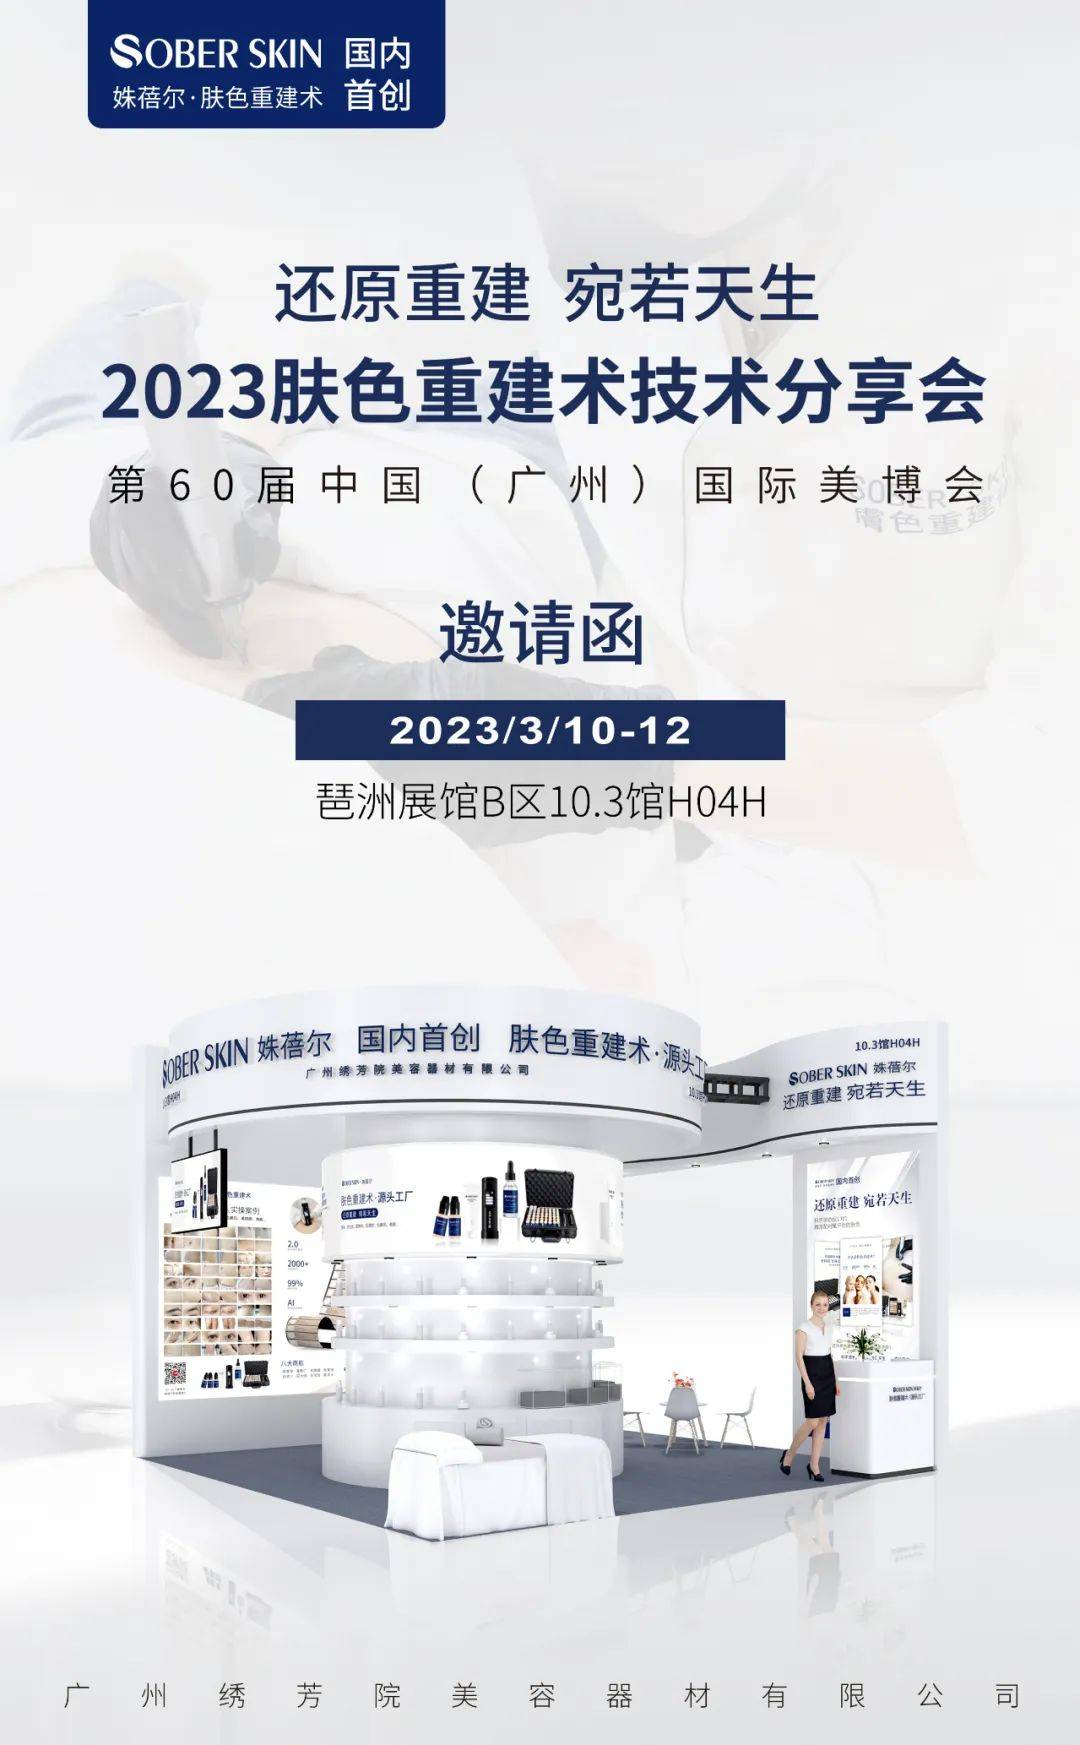 胡莱三国有苹果版么:Sober skin肤色重建术--诚邀您参加第60届广州美博会！